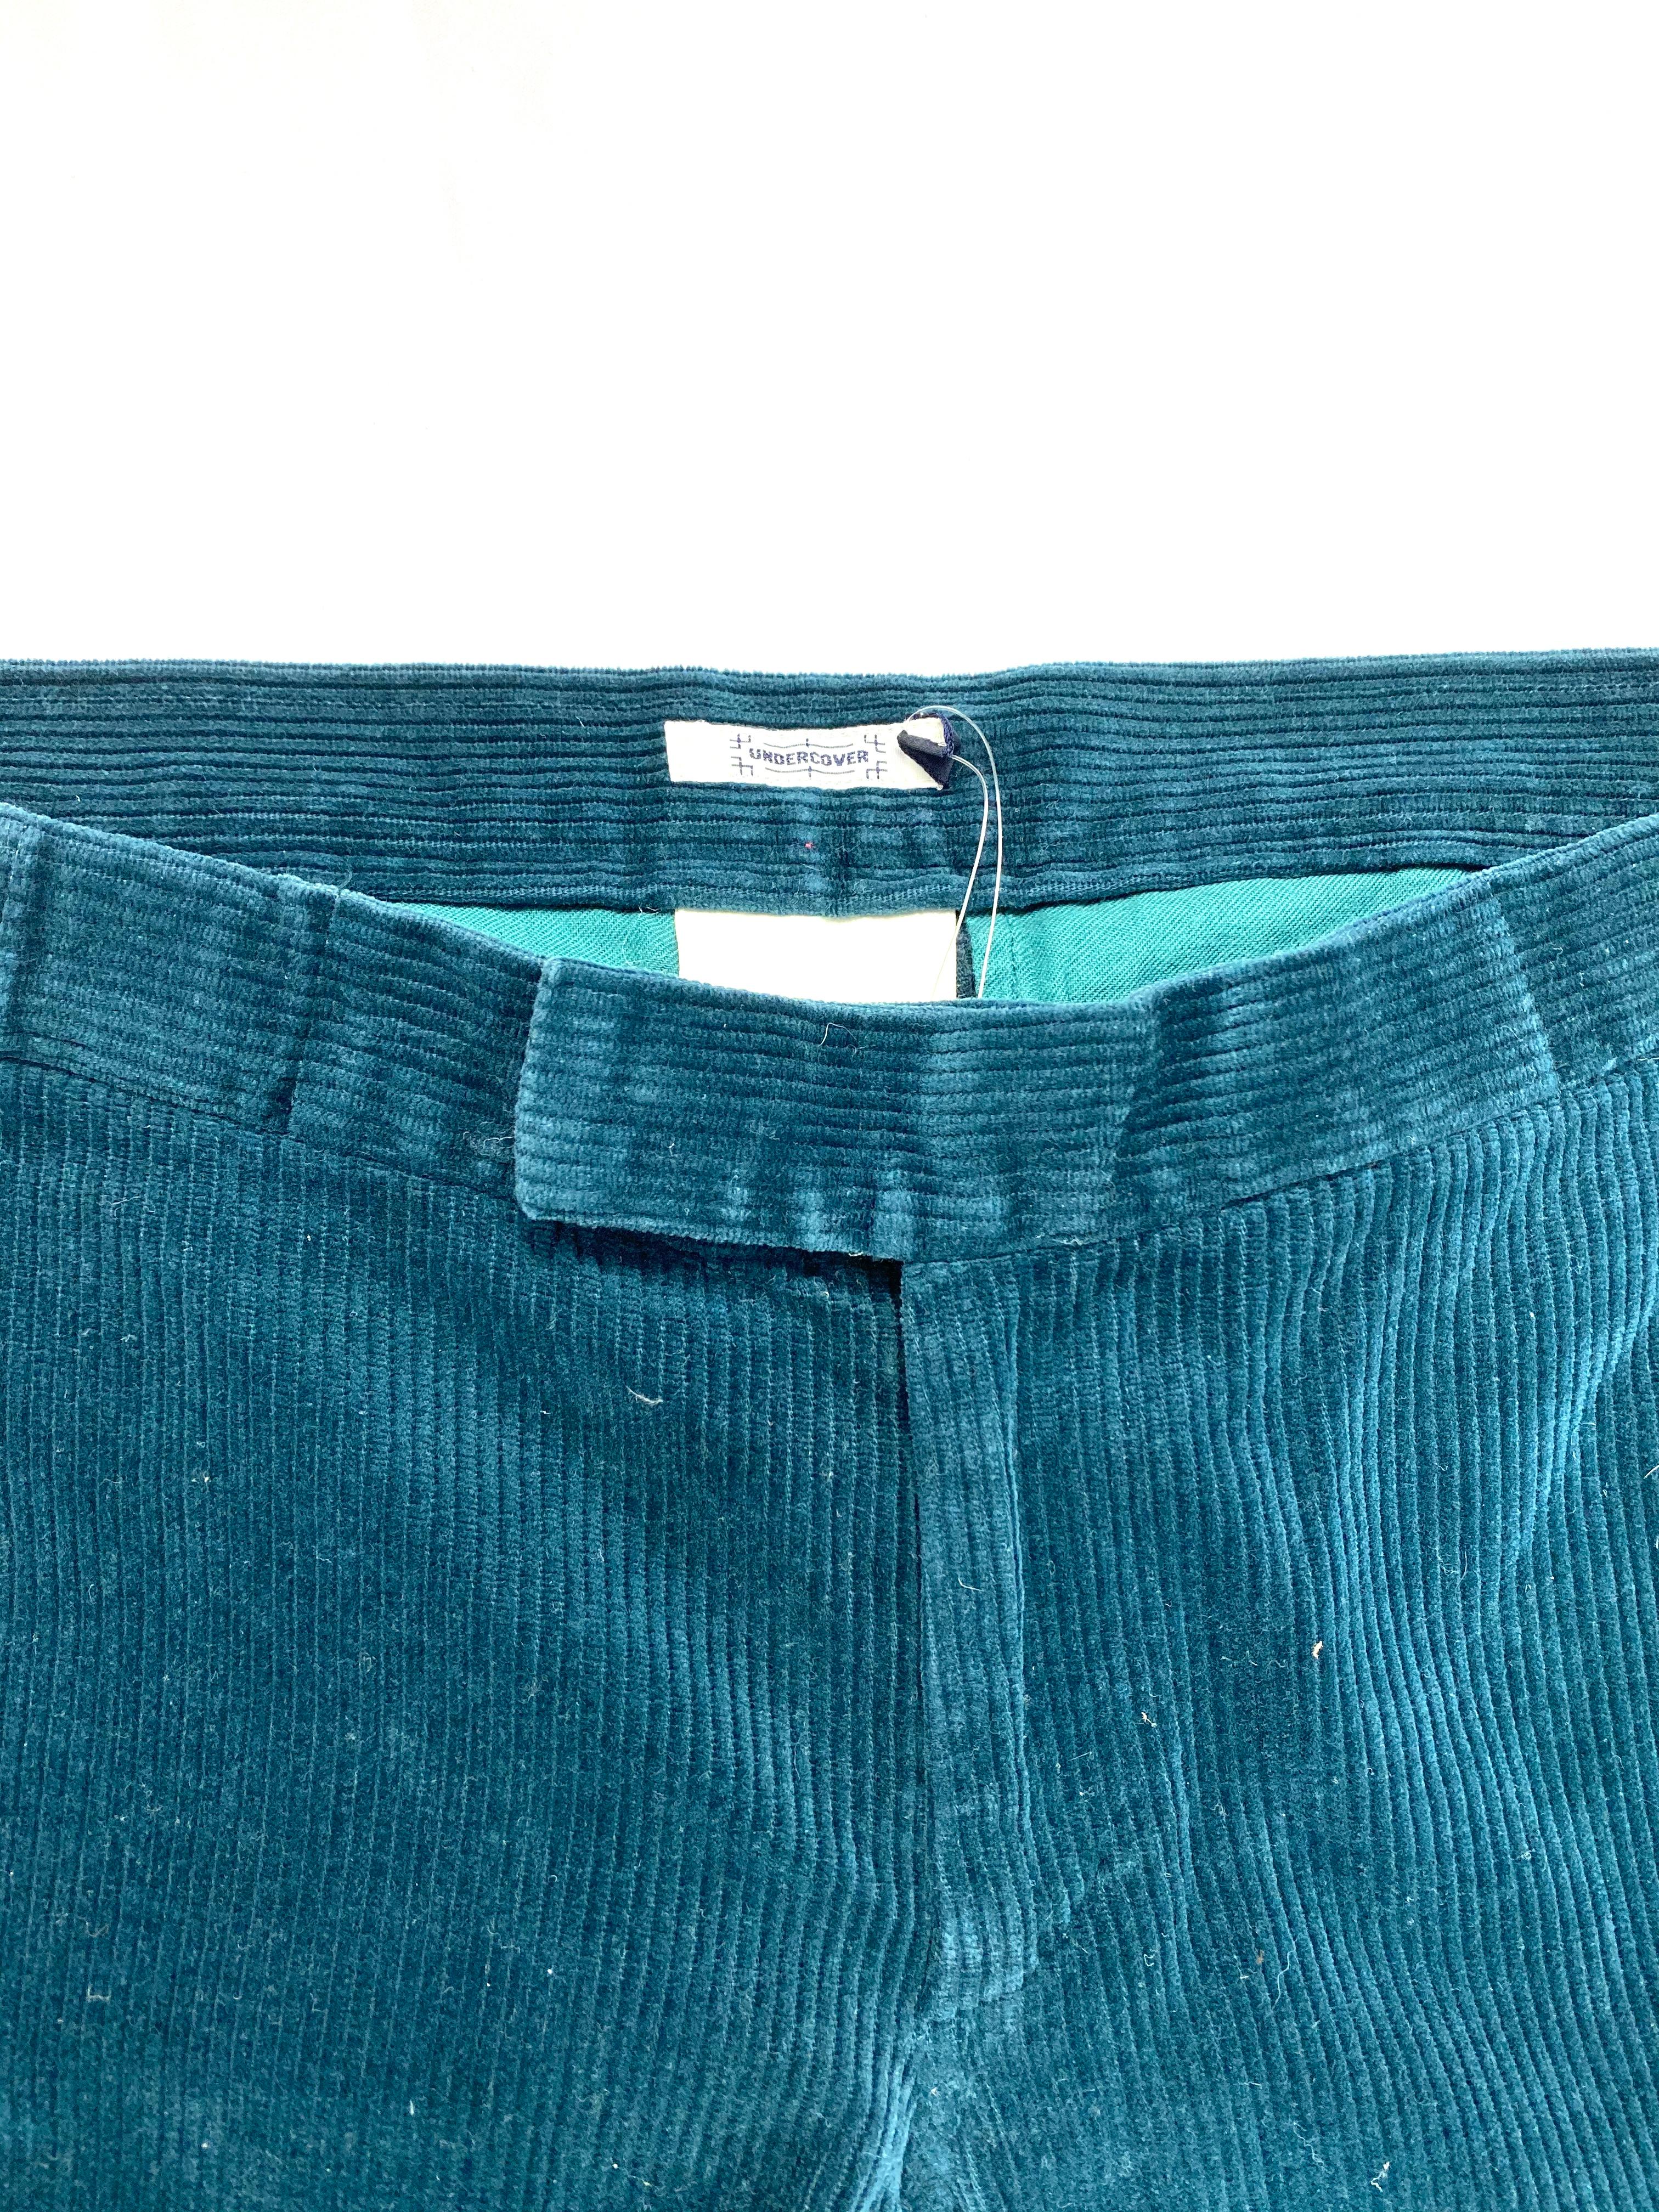 turquoise corduroy pants